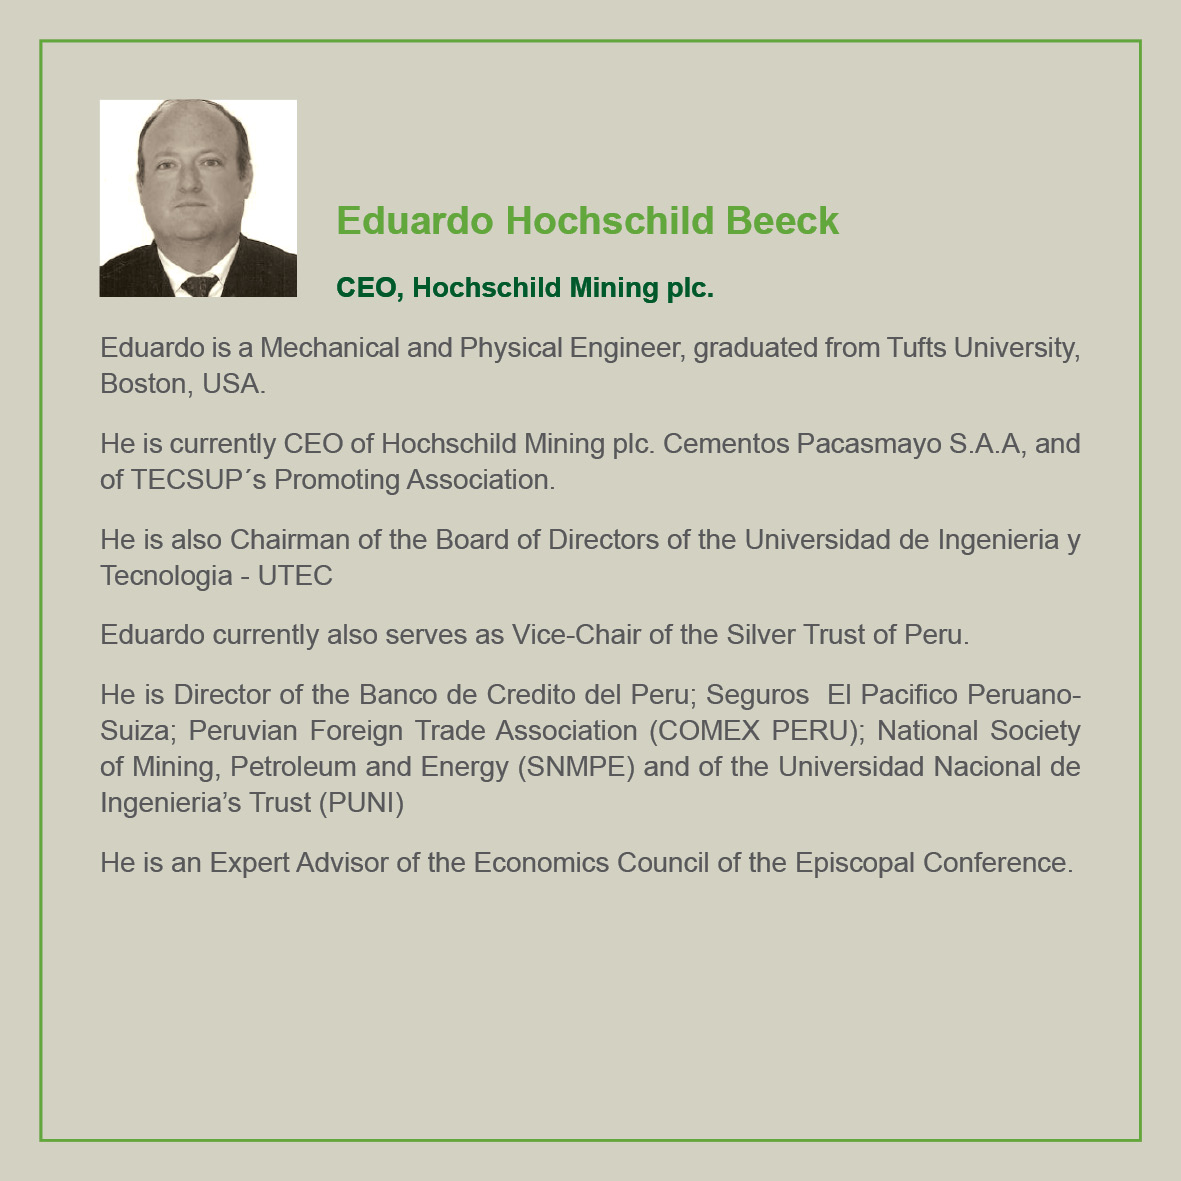 Eduardo Hochschild Beeck